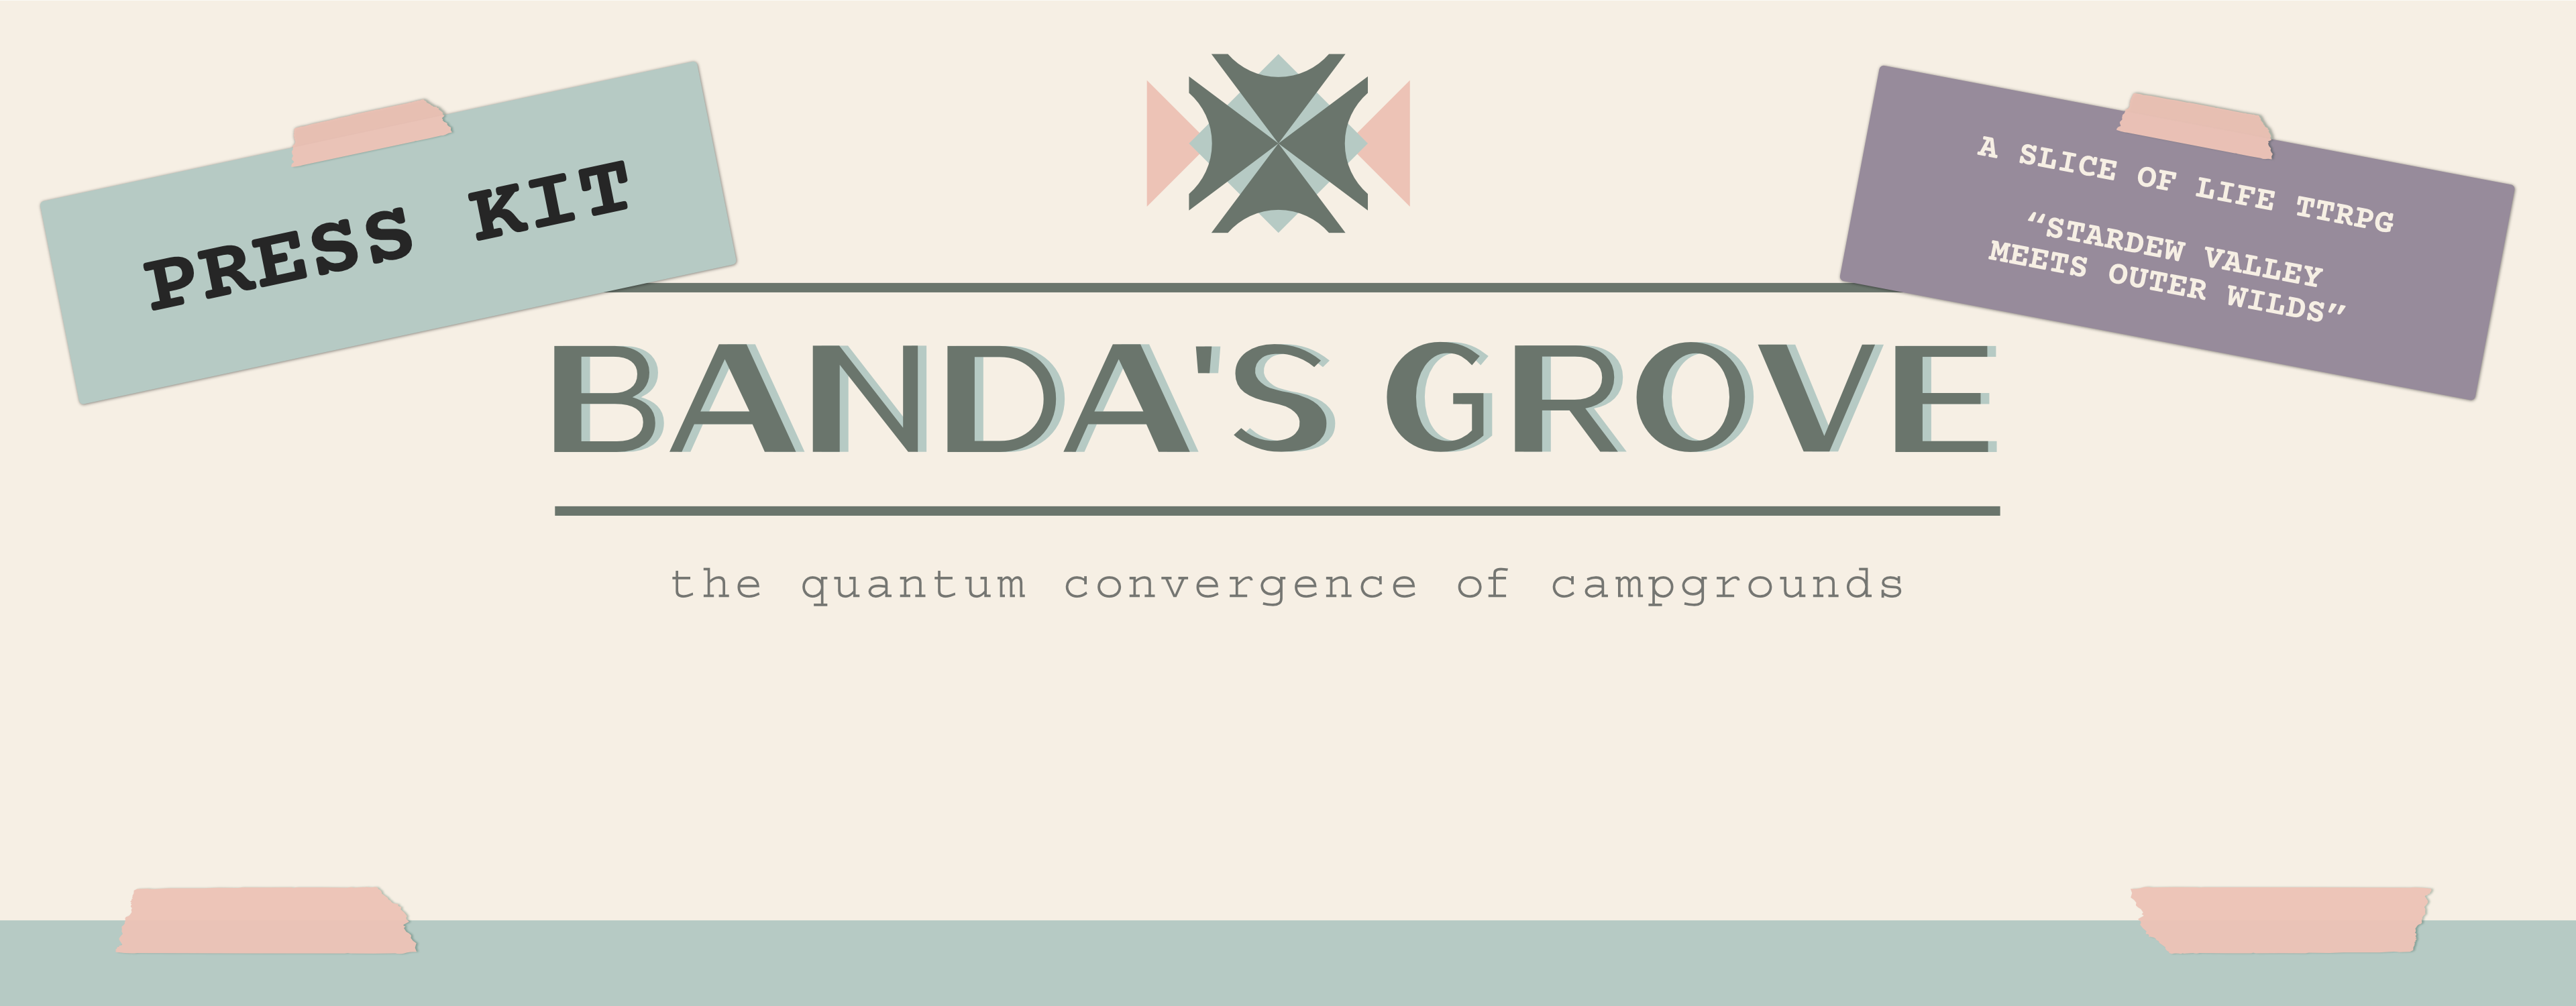 Banda's Grove - Press Kit